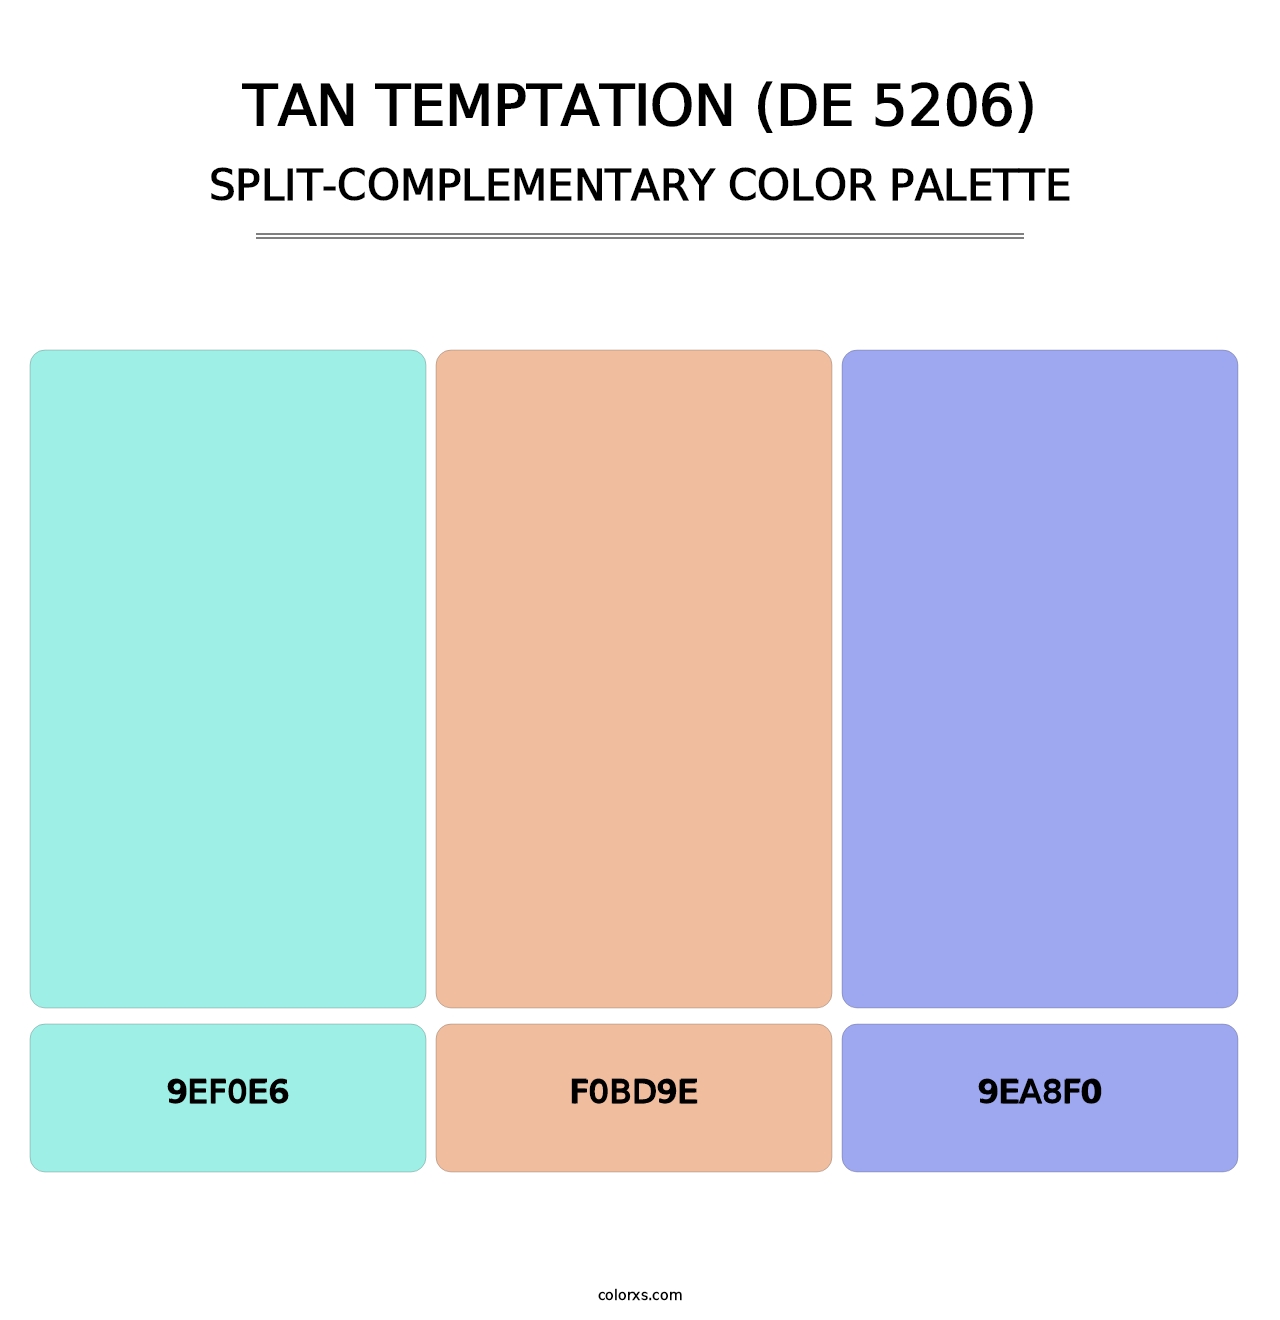 Tan Temptation (DE 5206) - Split-Complementary Color Palette